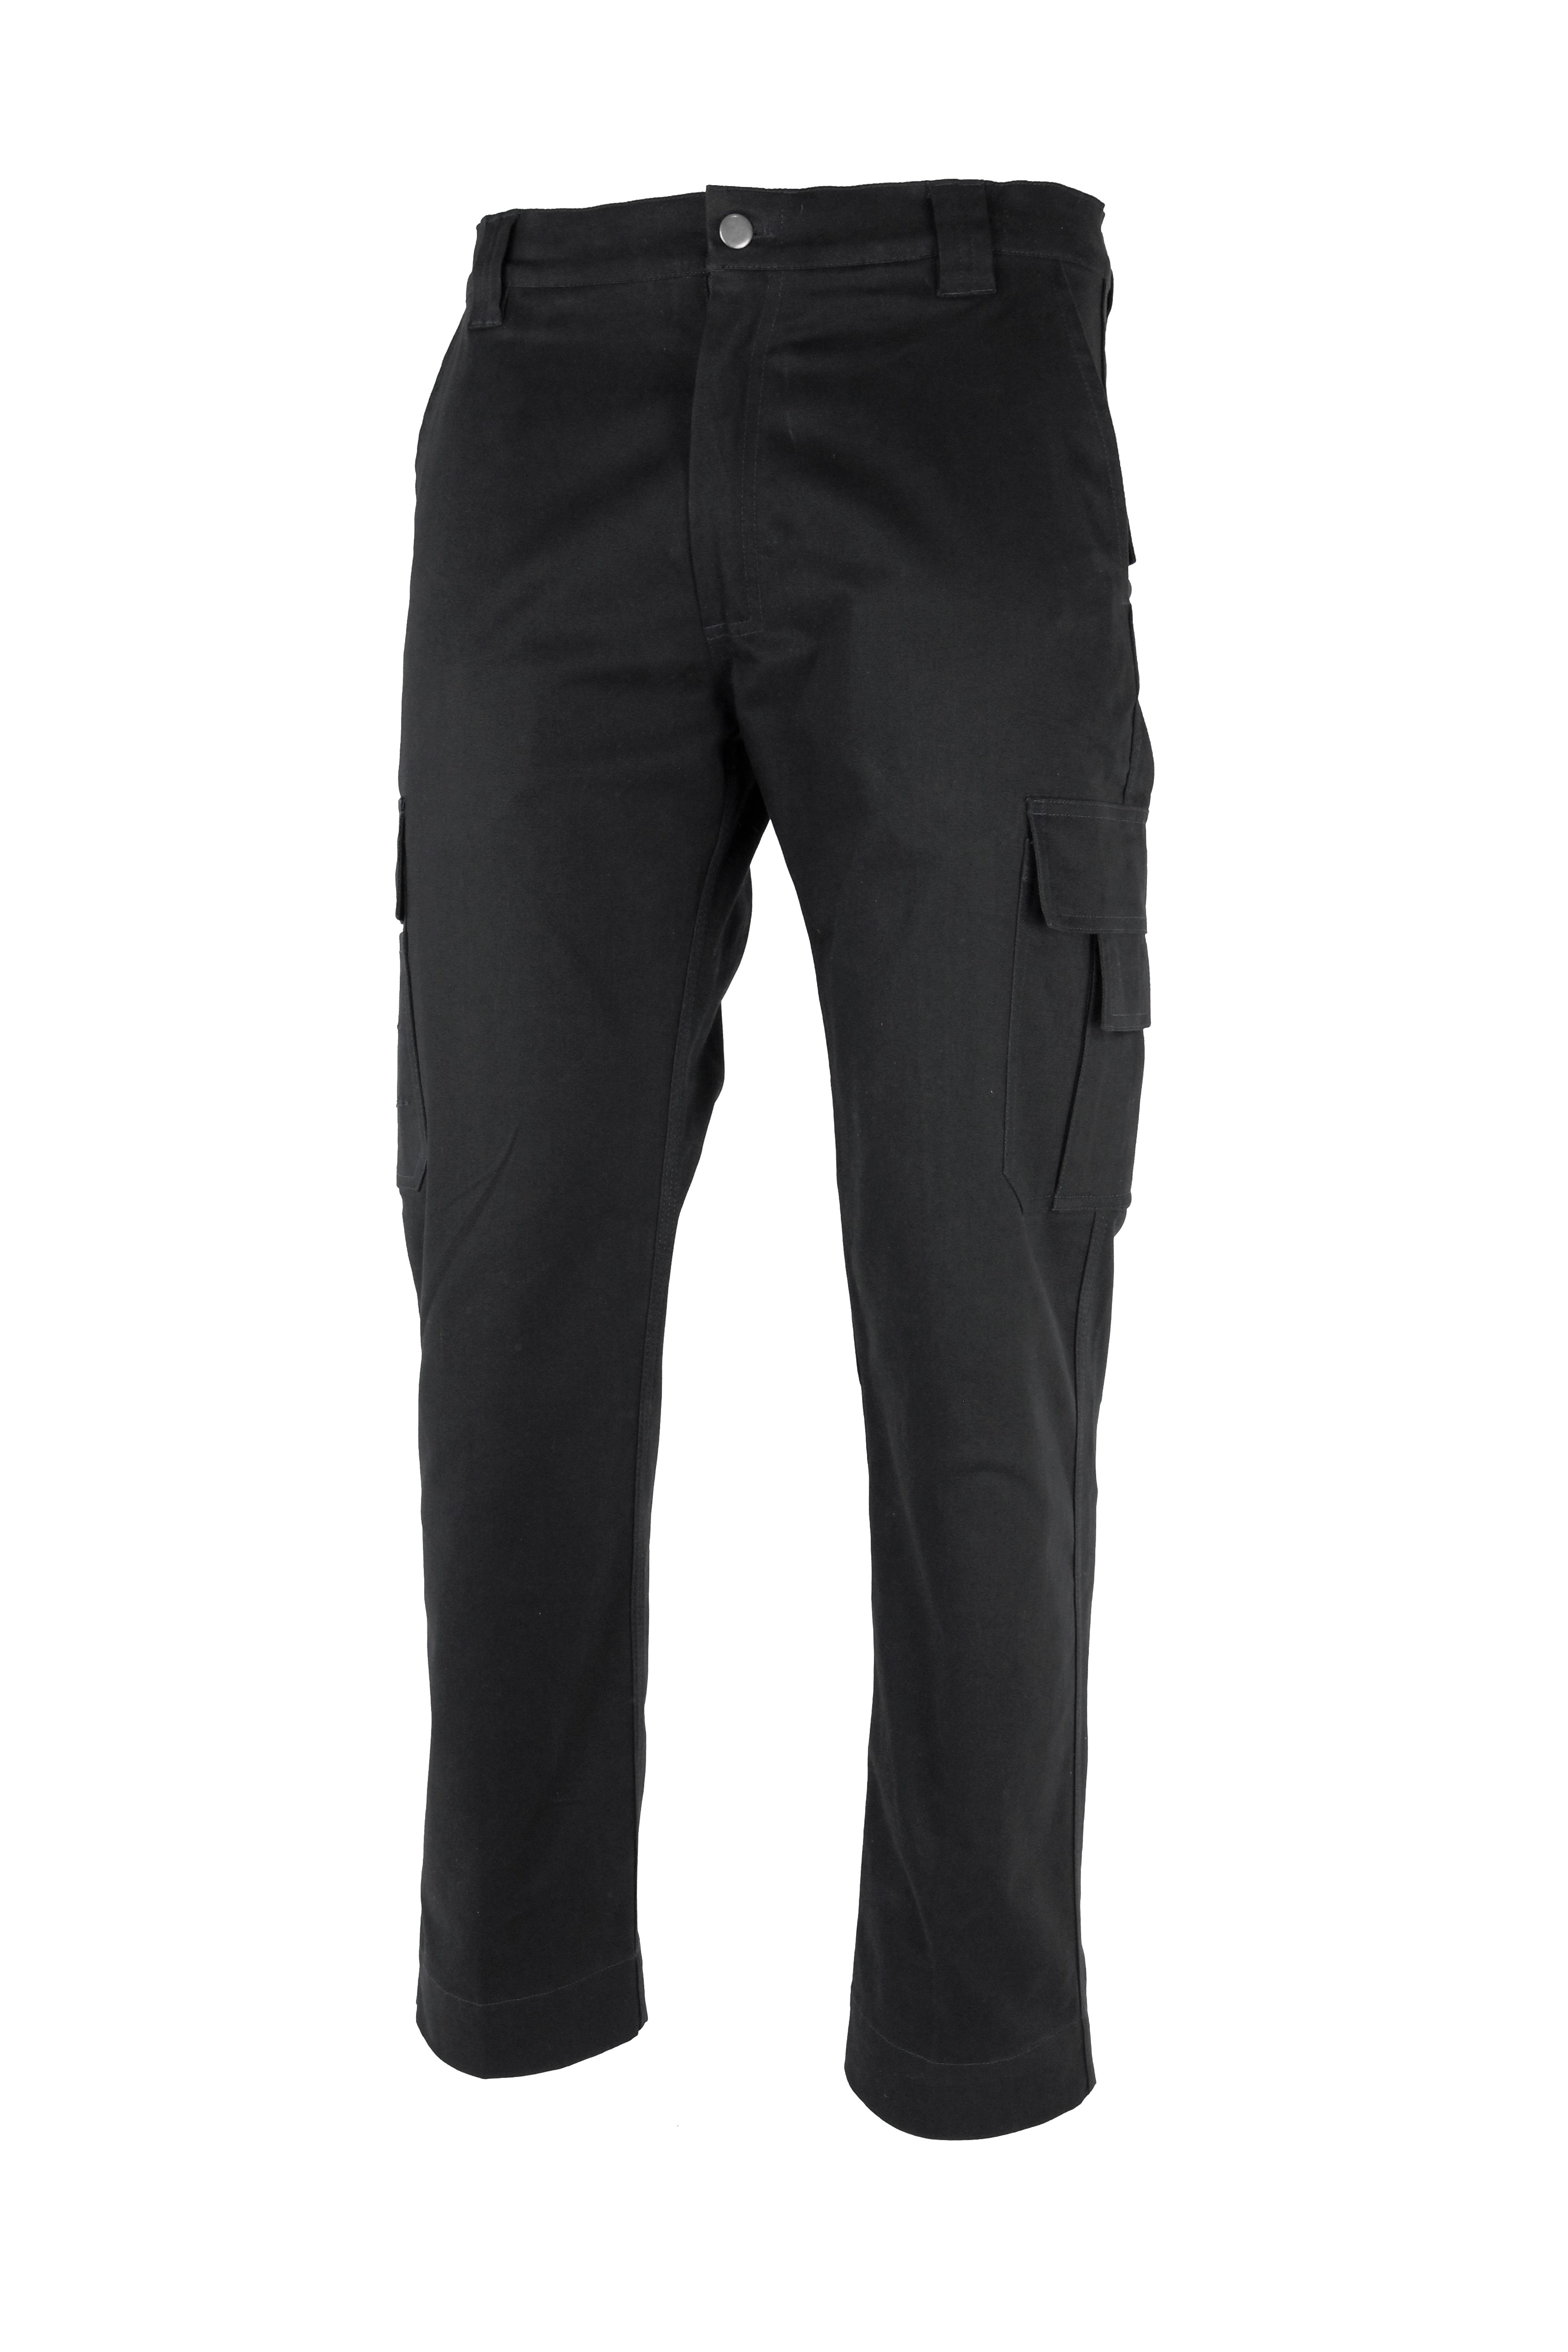 Radne hlače CARGO FLEX crne, vel. 46-0